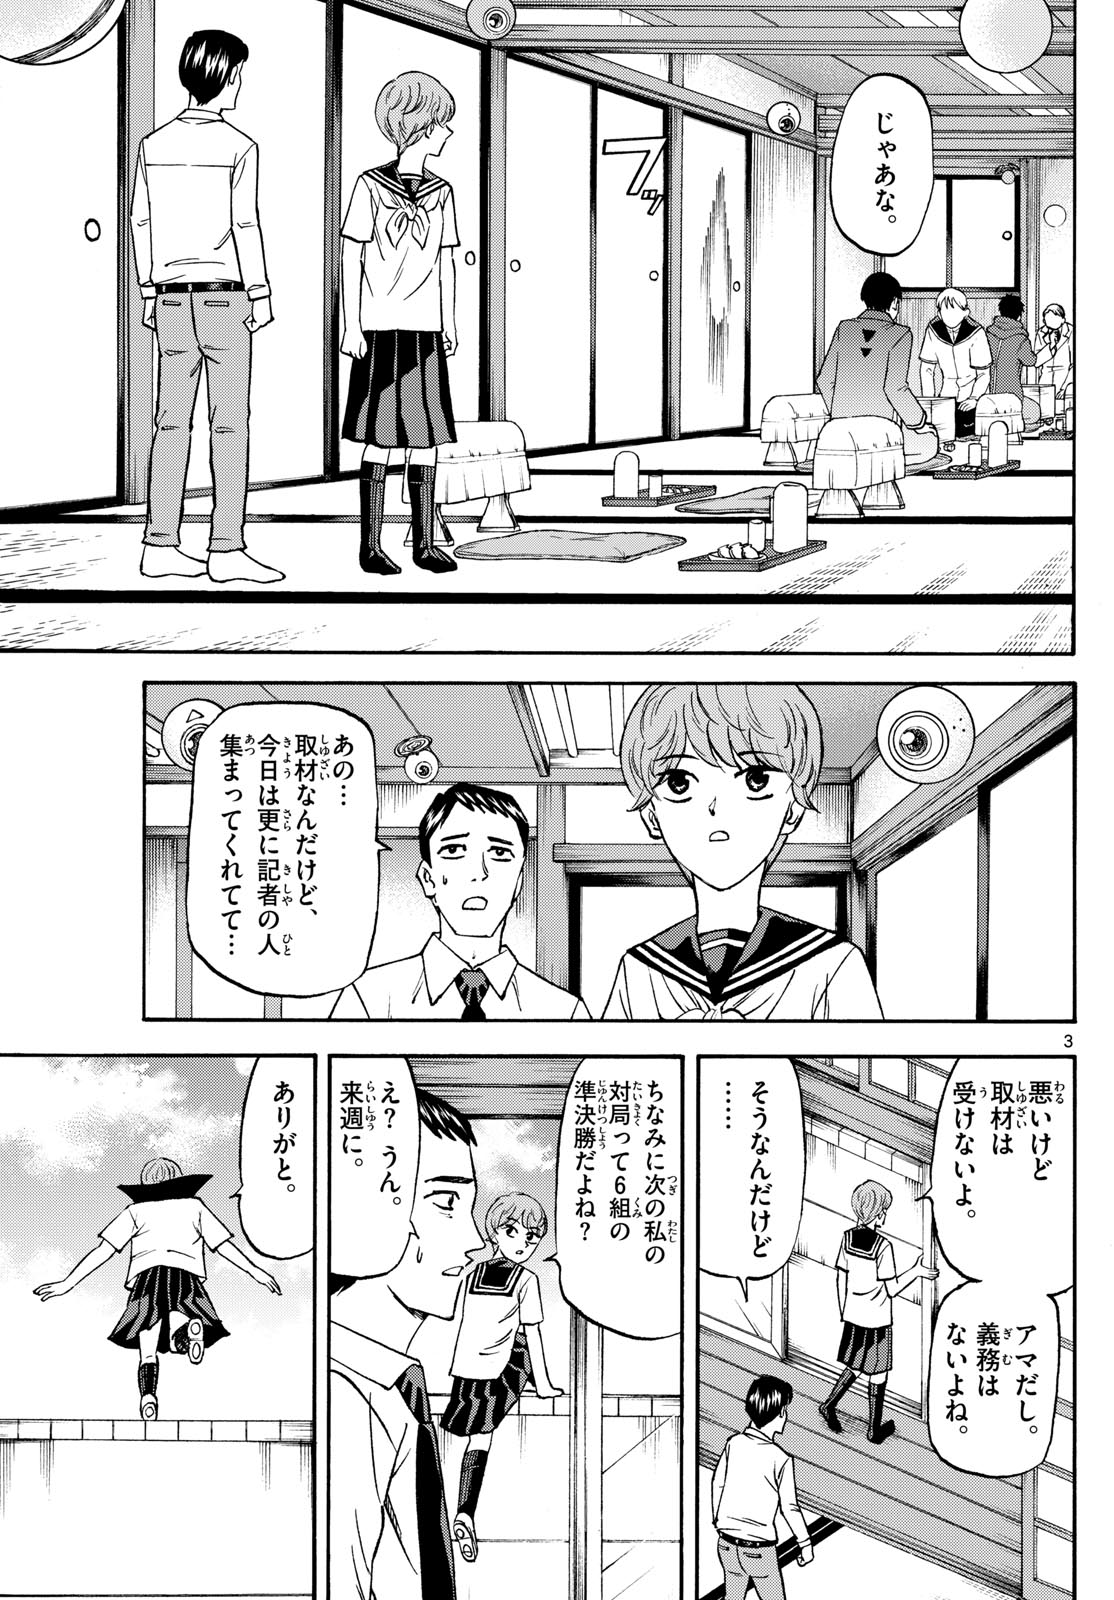 Tatsu to Ichigo - Chapter 192 - Page 3